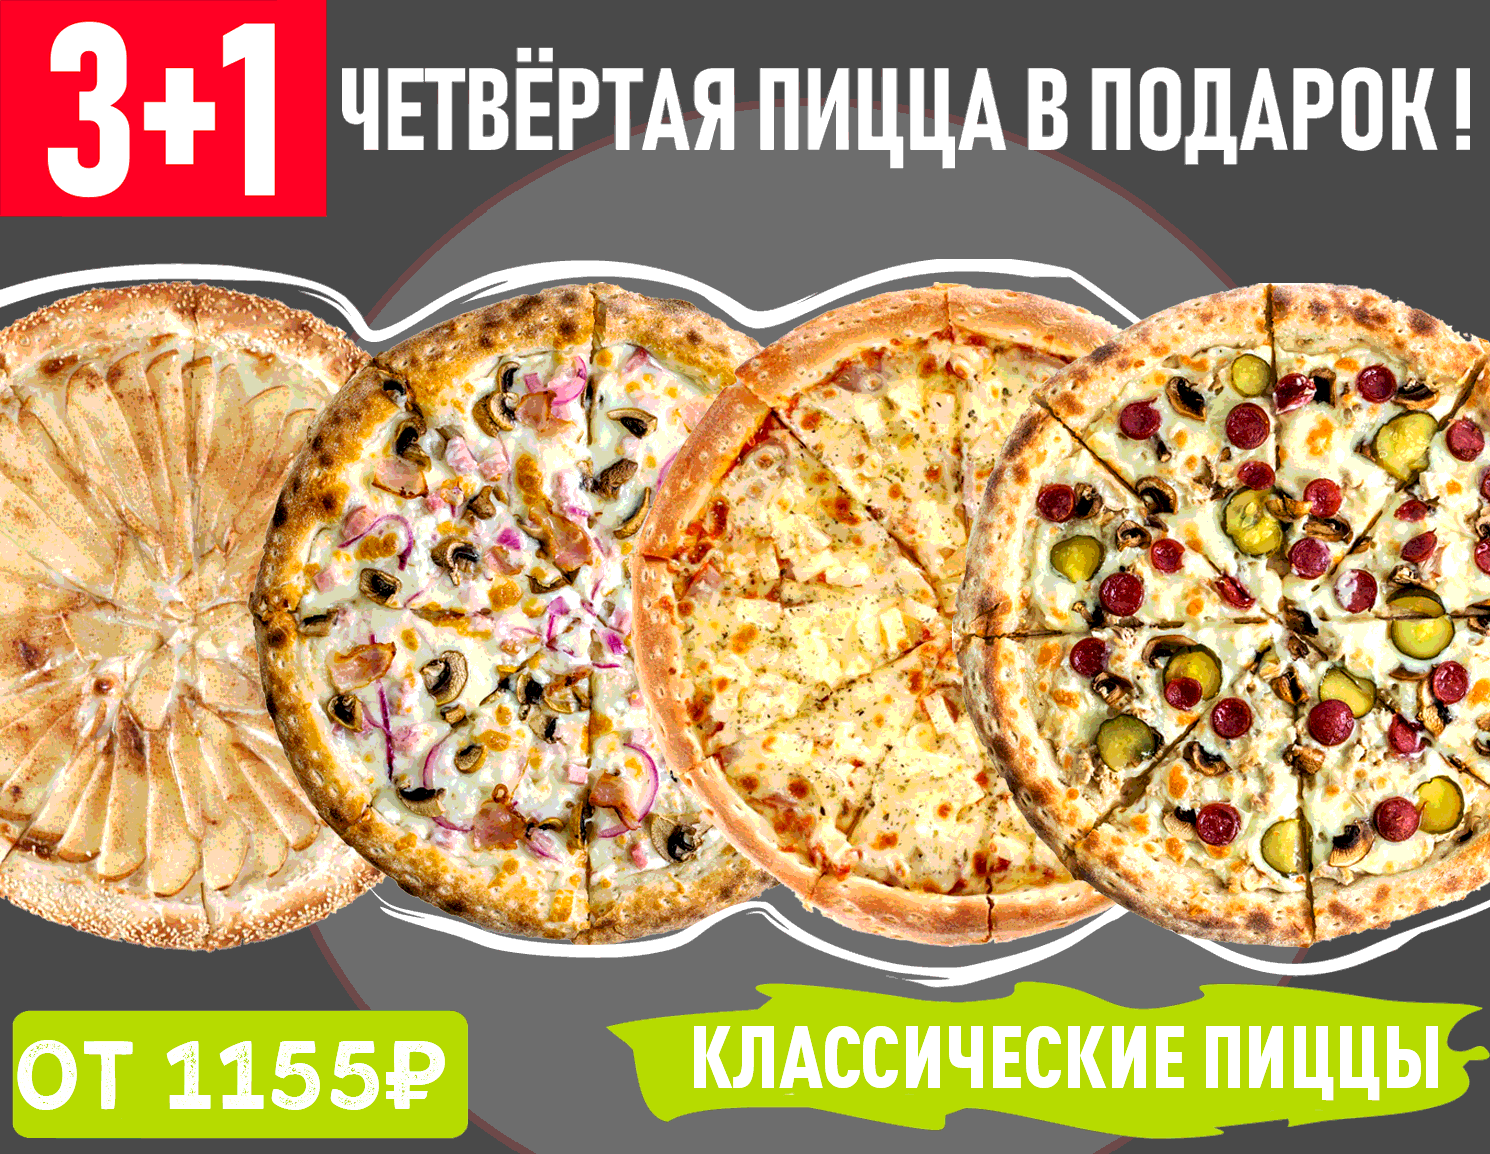 пицца лучшая в красноярске с доставкой рейтинг фото 79